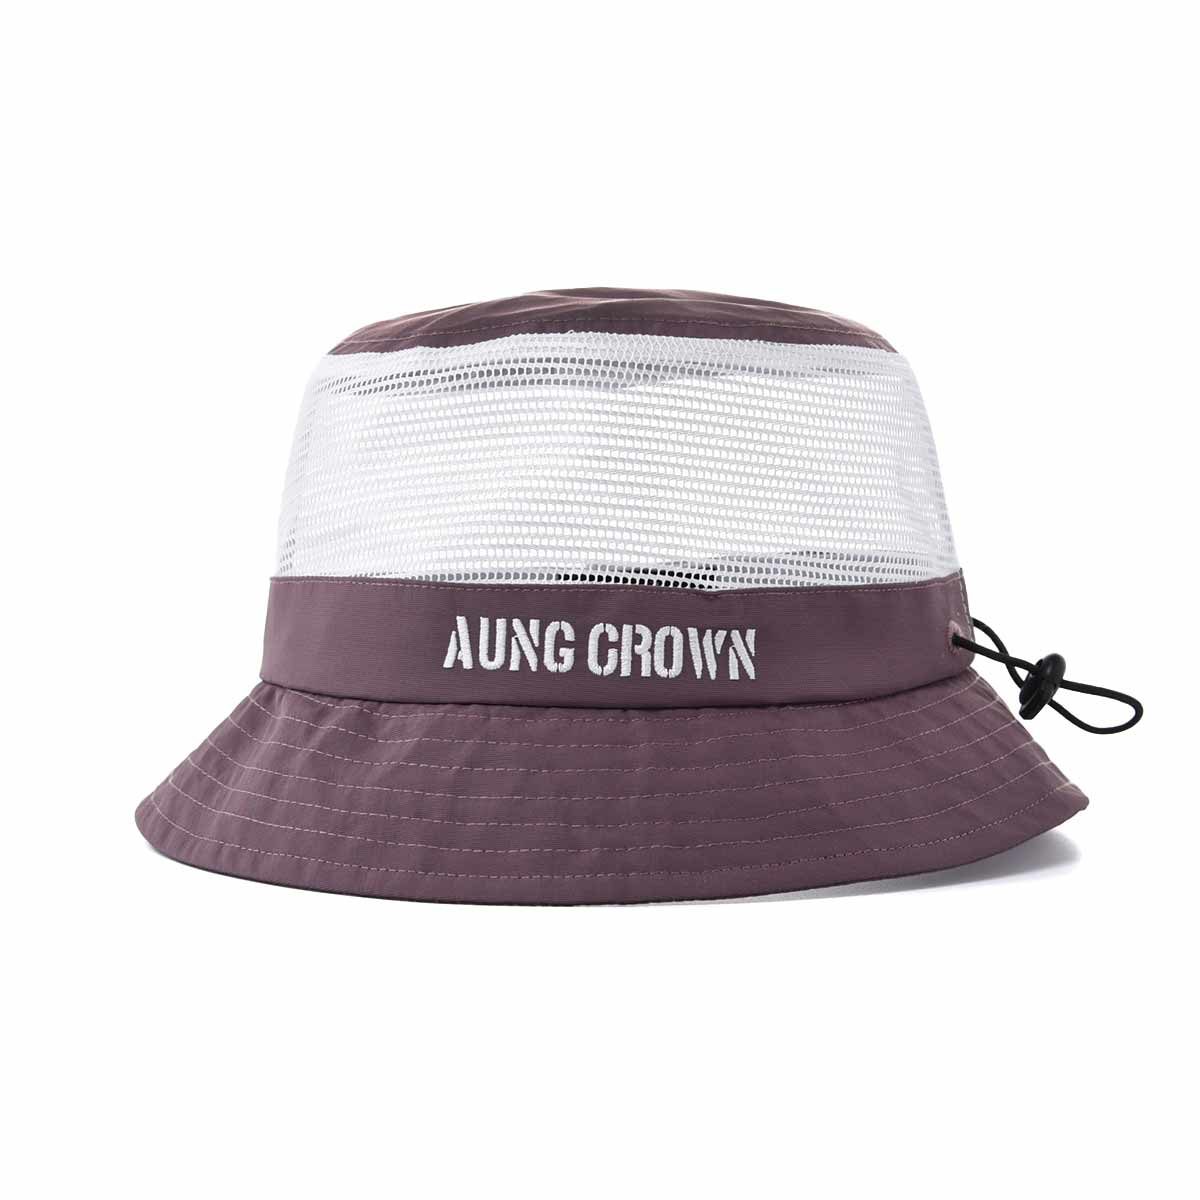 Aung-Crown-purple-mesh-bucket-hat-SFG-210318-1